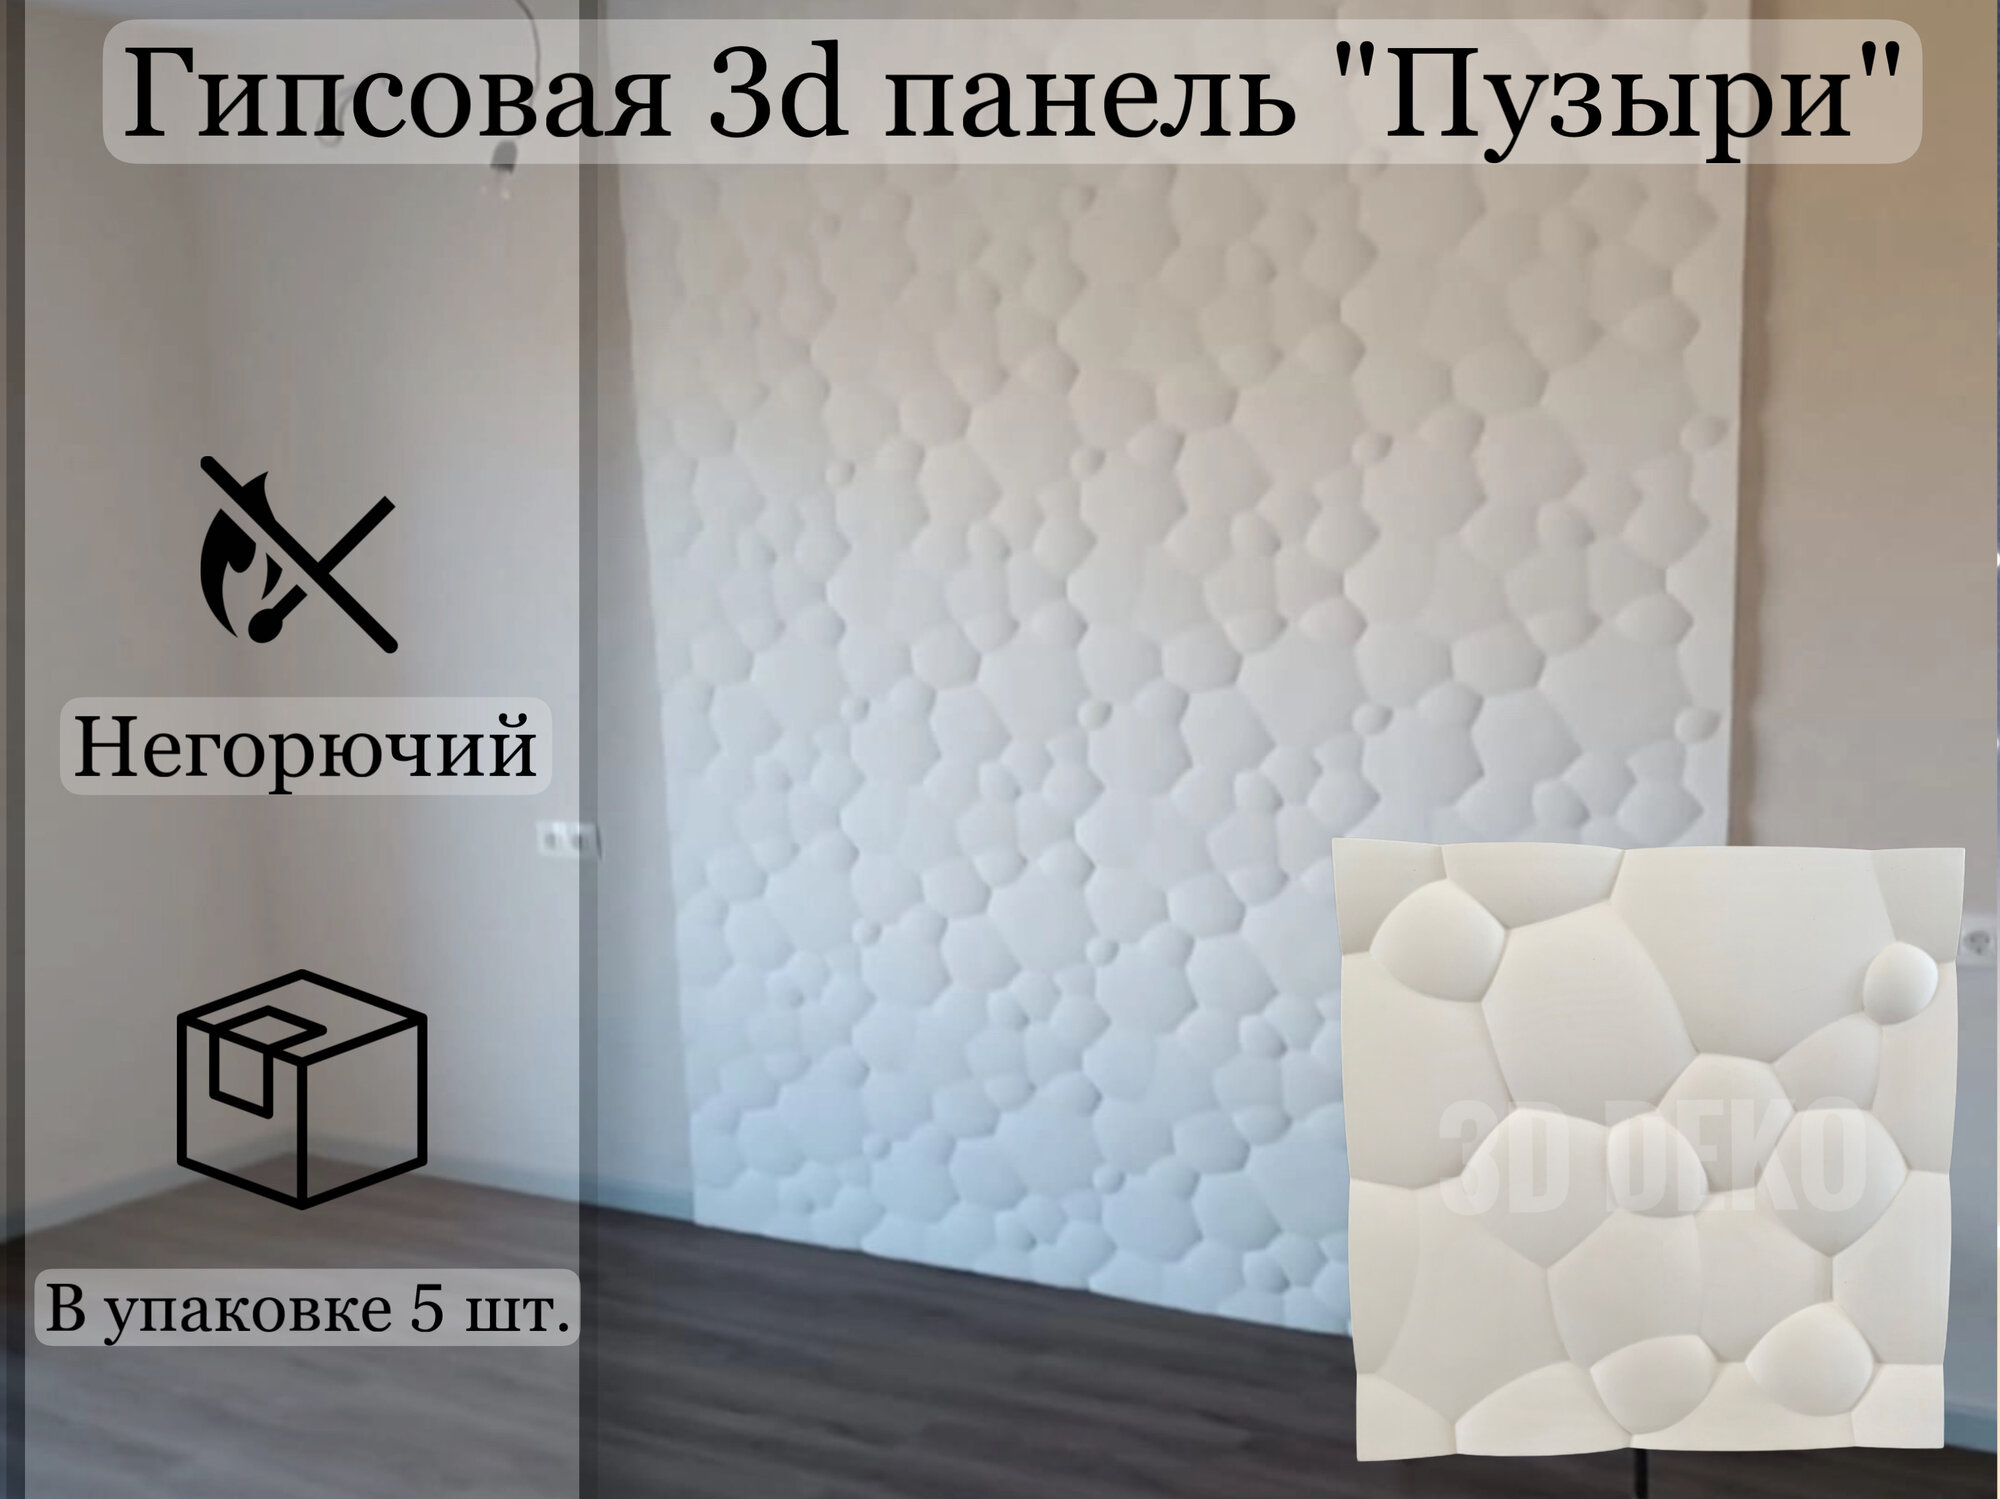 Гипсовая 3D панель "Пузыри", 5 шт, 1,25 м2